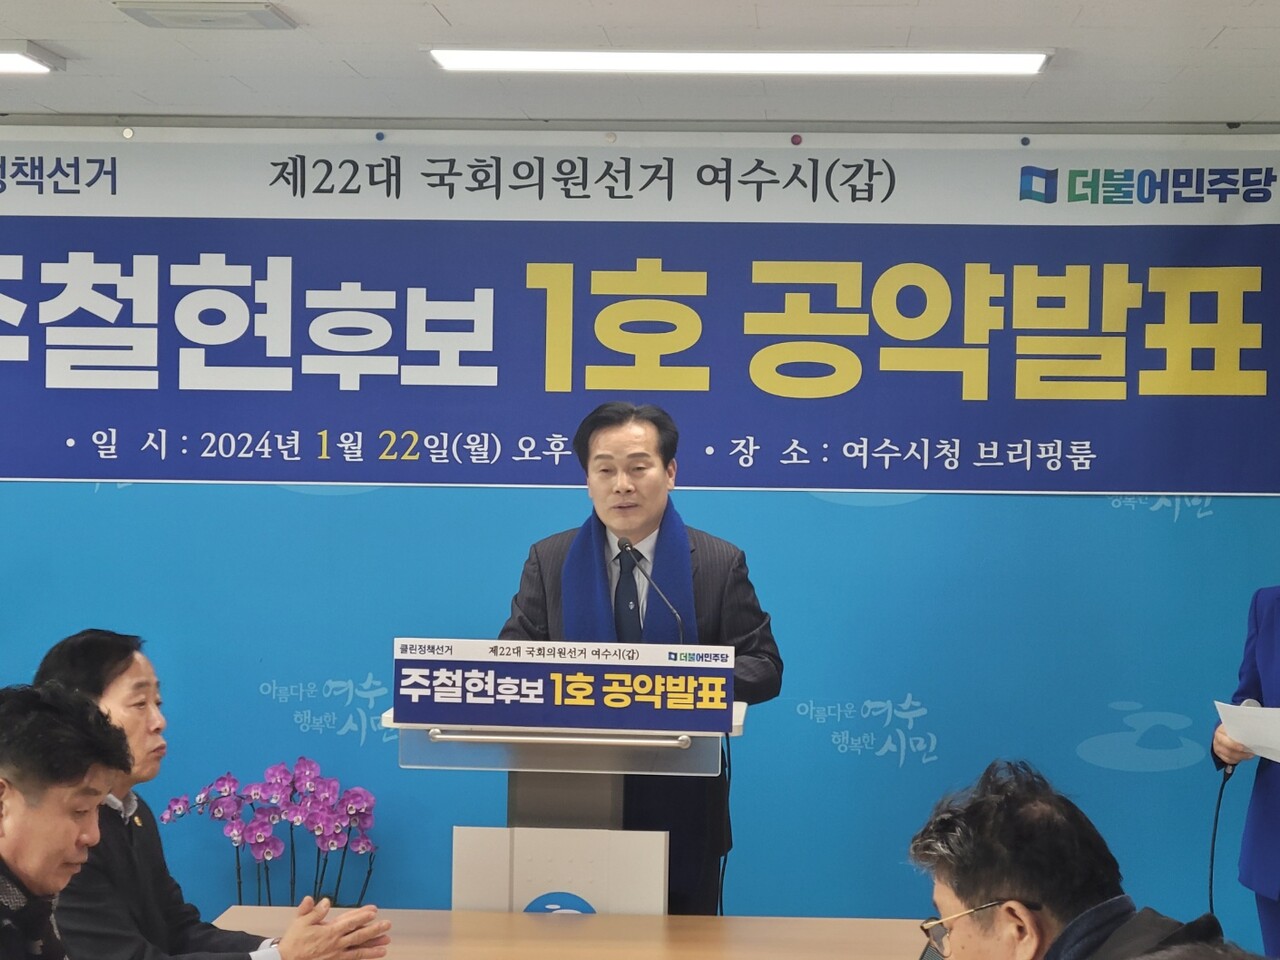 ▲주철현 국회의원은 지난달 22일 여수시청 브리핑실에서 기자회견을 갖고 있다.